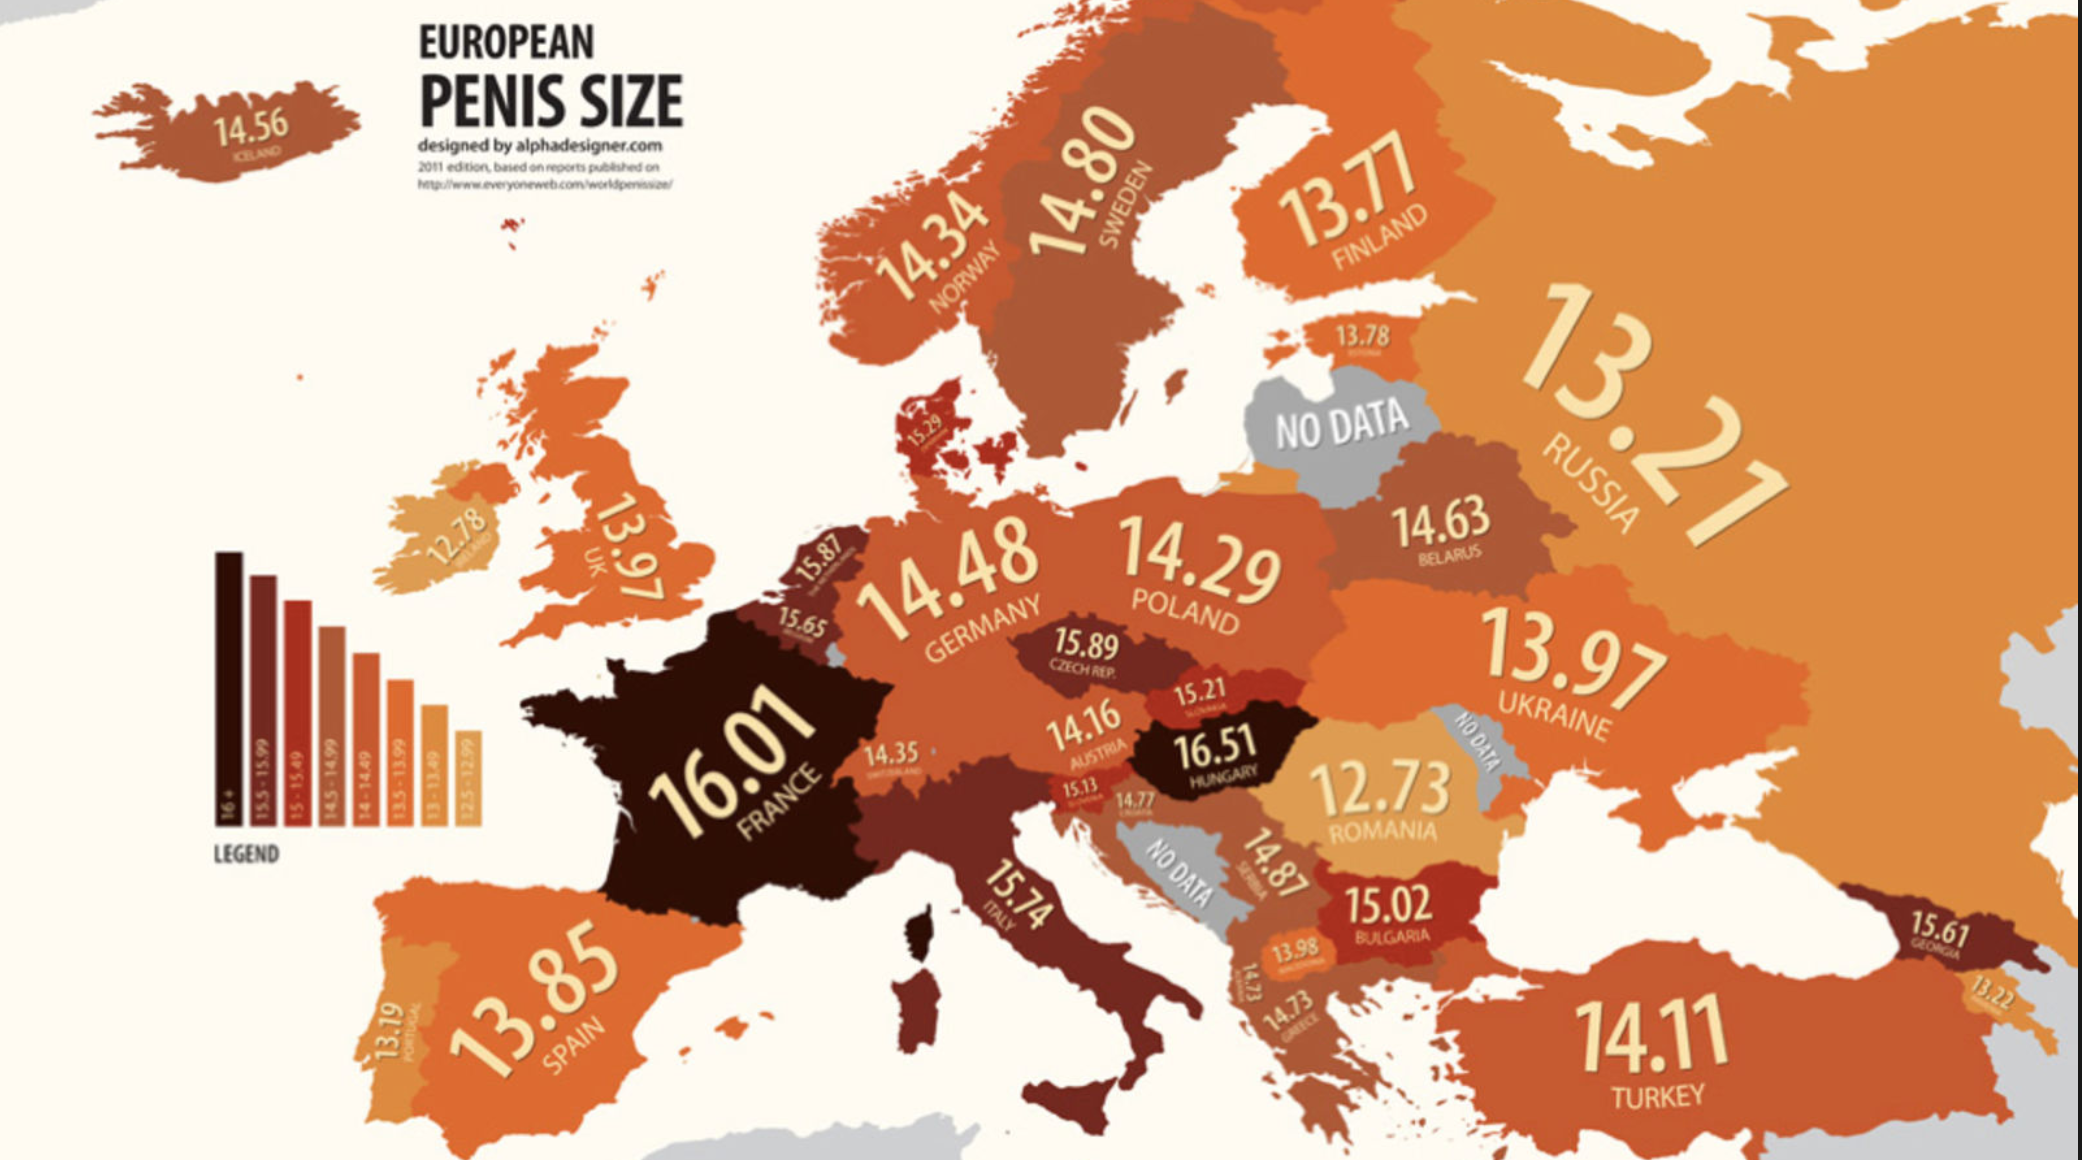 карта средней длины пенисов в европе